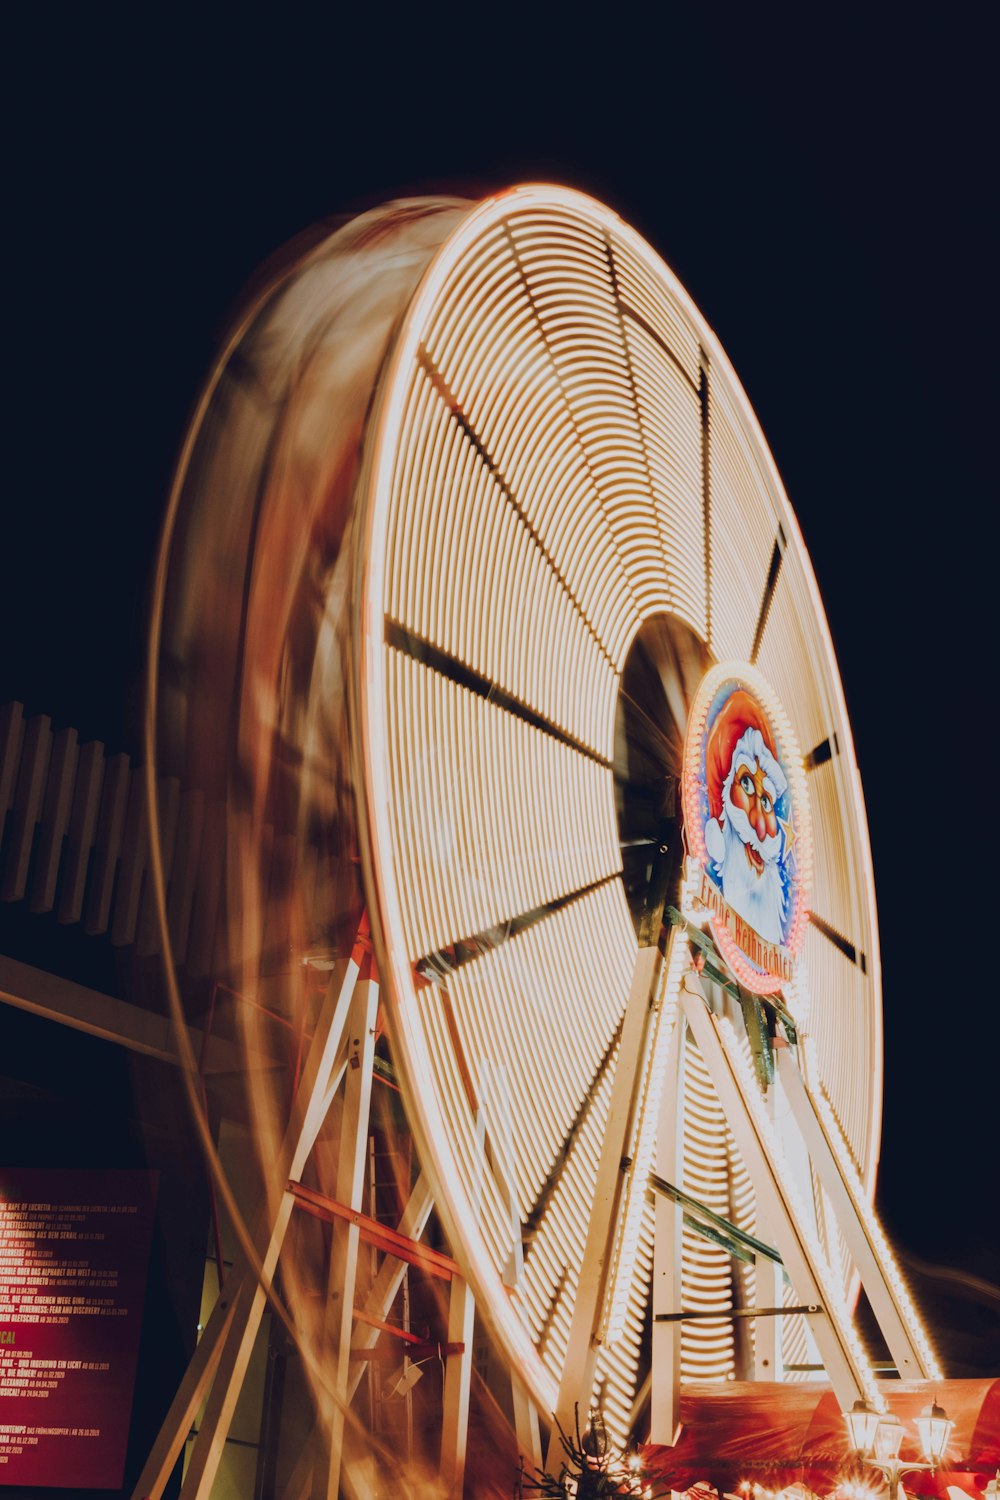 Ein Riesenrad, das sich bei einem Karneval im Dunkeln dreht